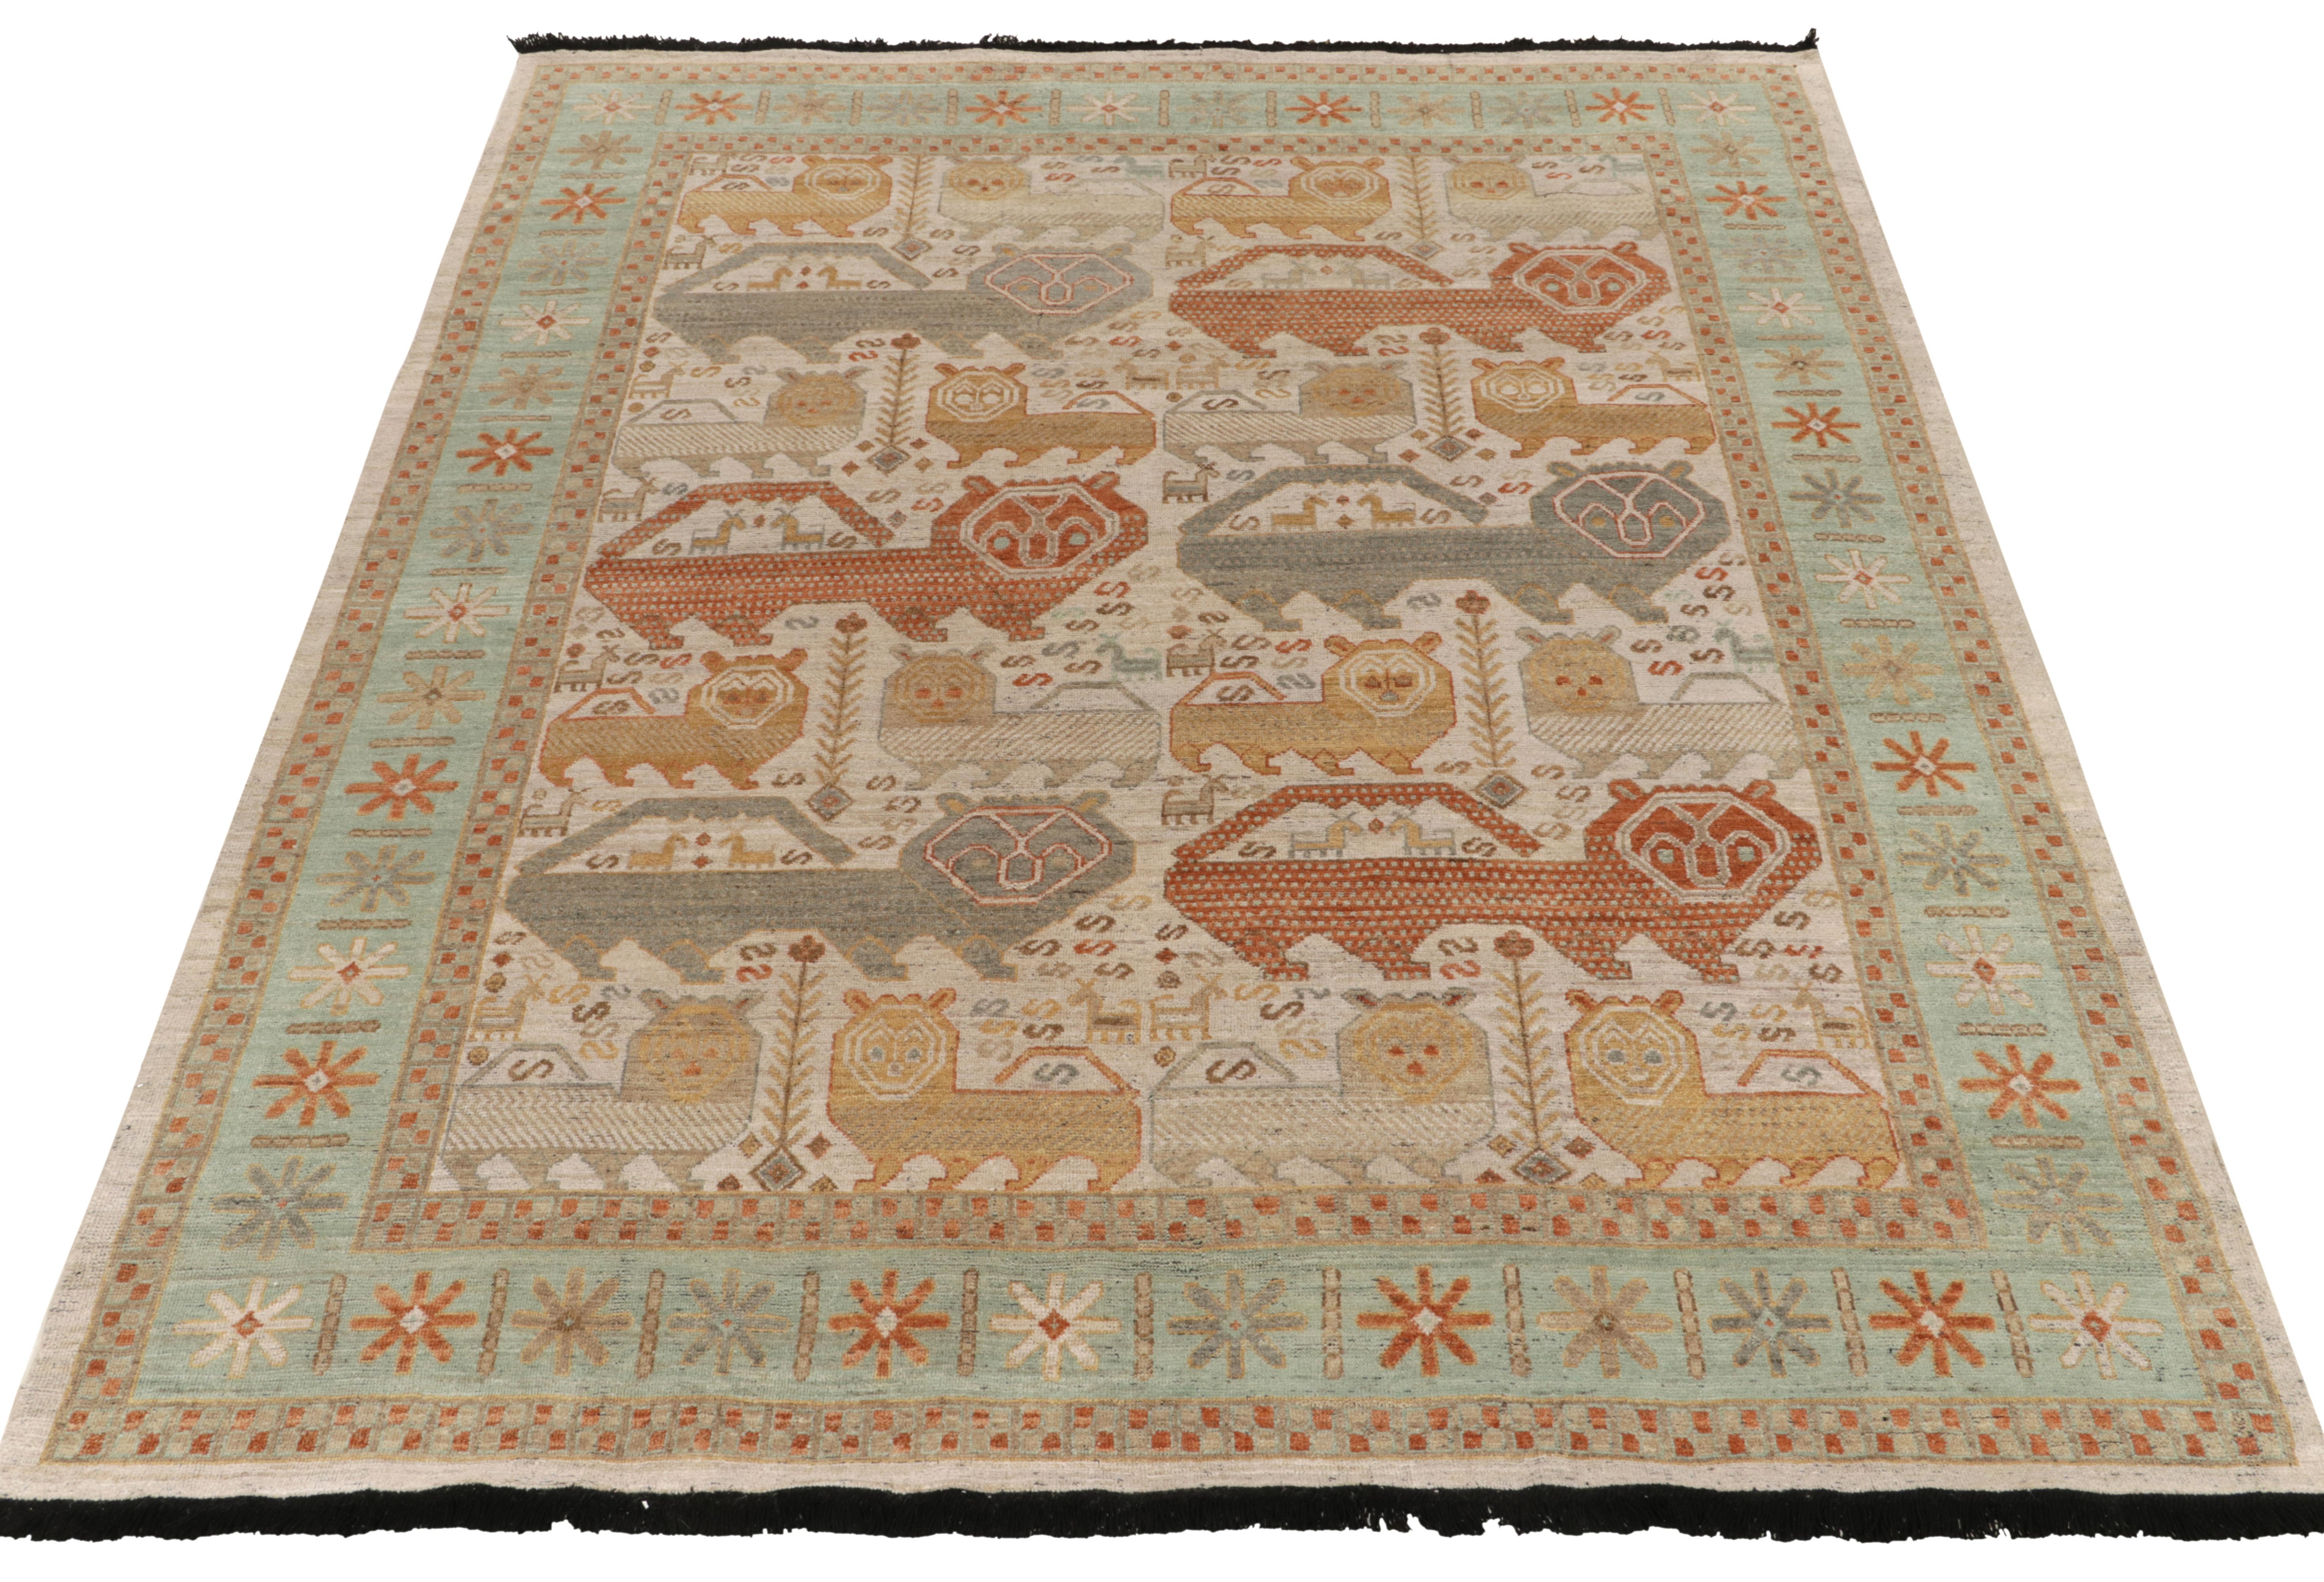 Noué à la main en laine, ce tapis 8x10 est une ode à l'esthétique classique des tapis caucasiens du XVIIIe siècle. Il fait partie de la vaste collection Burano de Rug & Kilim. 

Le tapis s'inspire de représentations de lions tribaux dans des tons